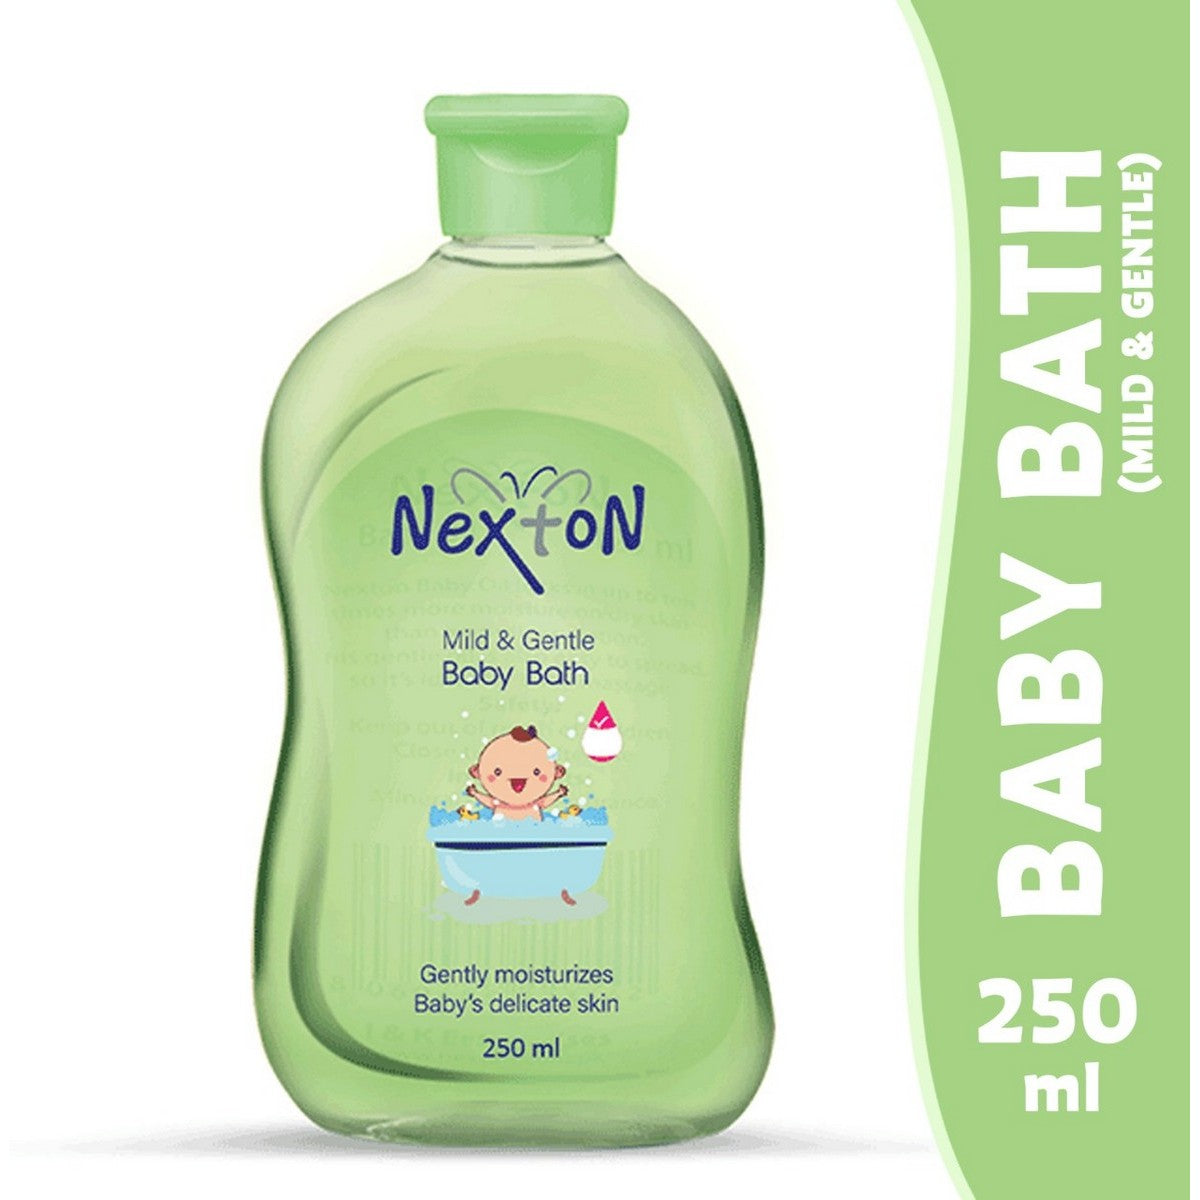 Nexton gentle baby bath